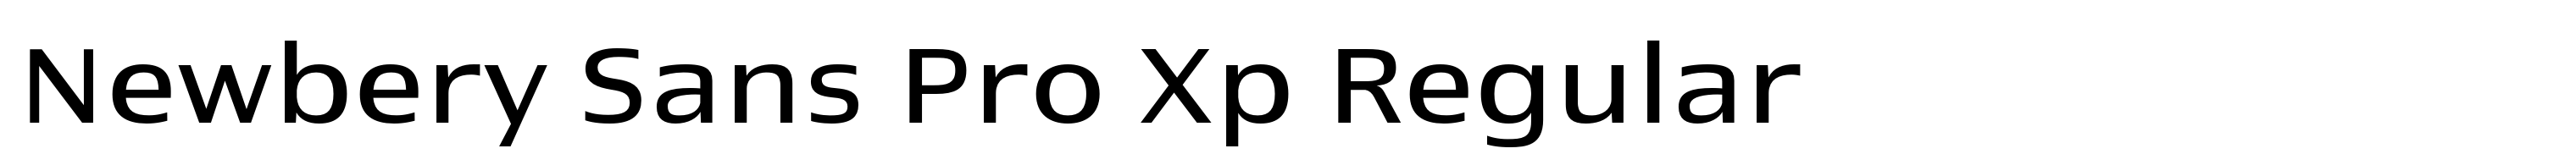 Newbery Sans Pro Xp Regular